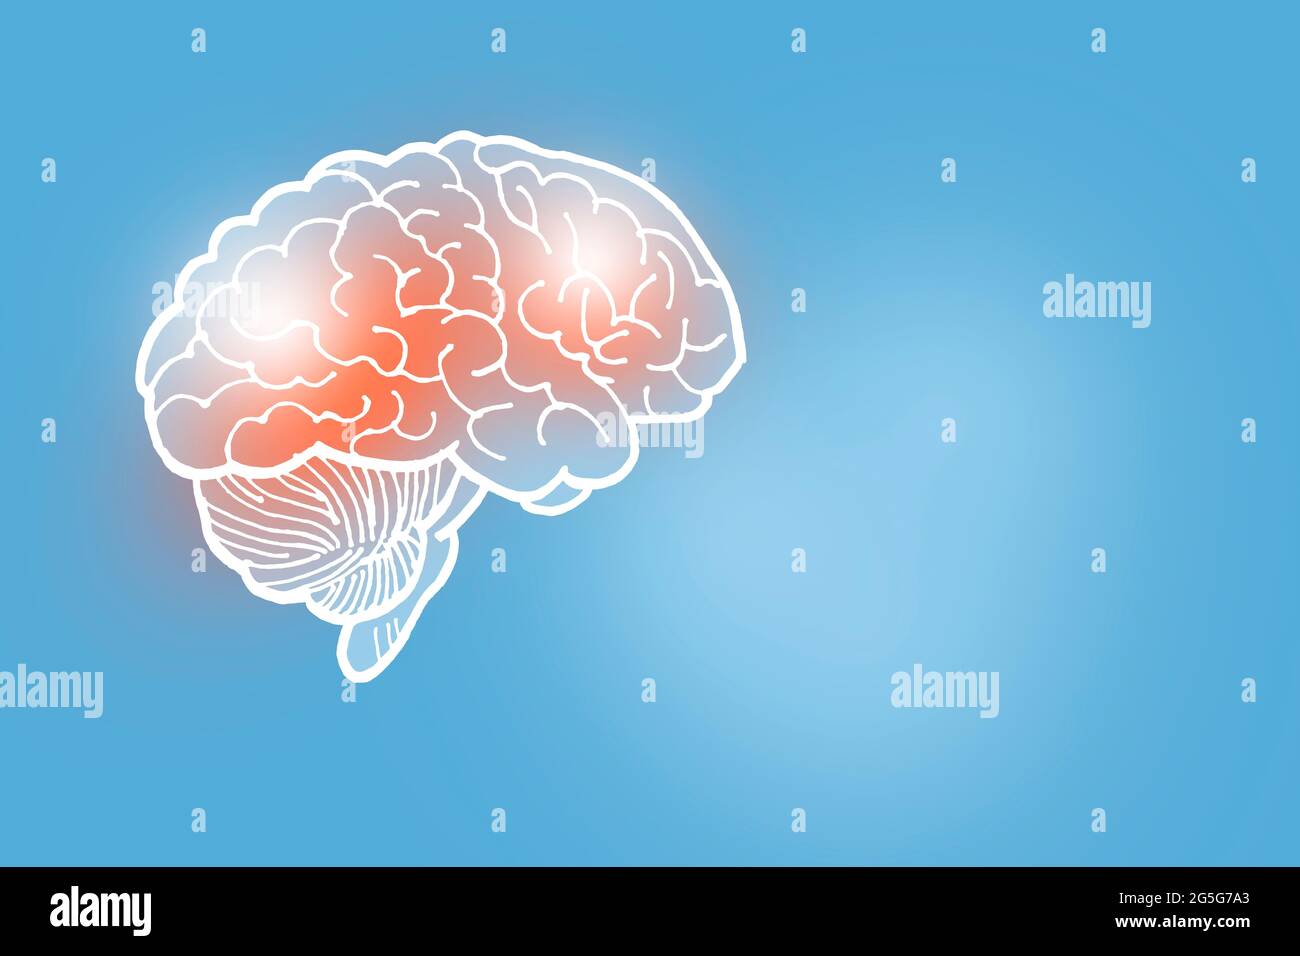 Illustration du cerveau humain sur fond bleu clair. Médical, science ensemble avec les principaux organes humains avec espace de copie vide pour le texte Banque D'Images